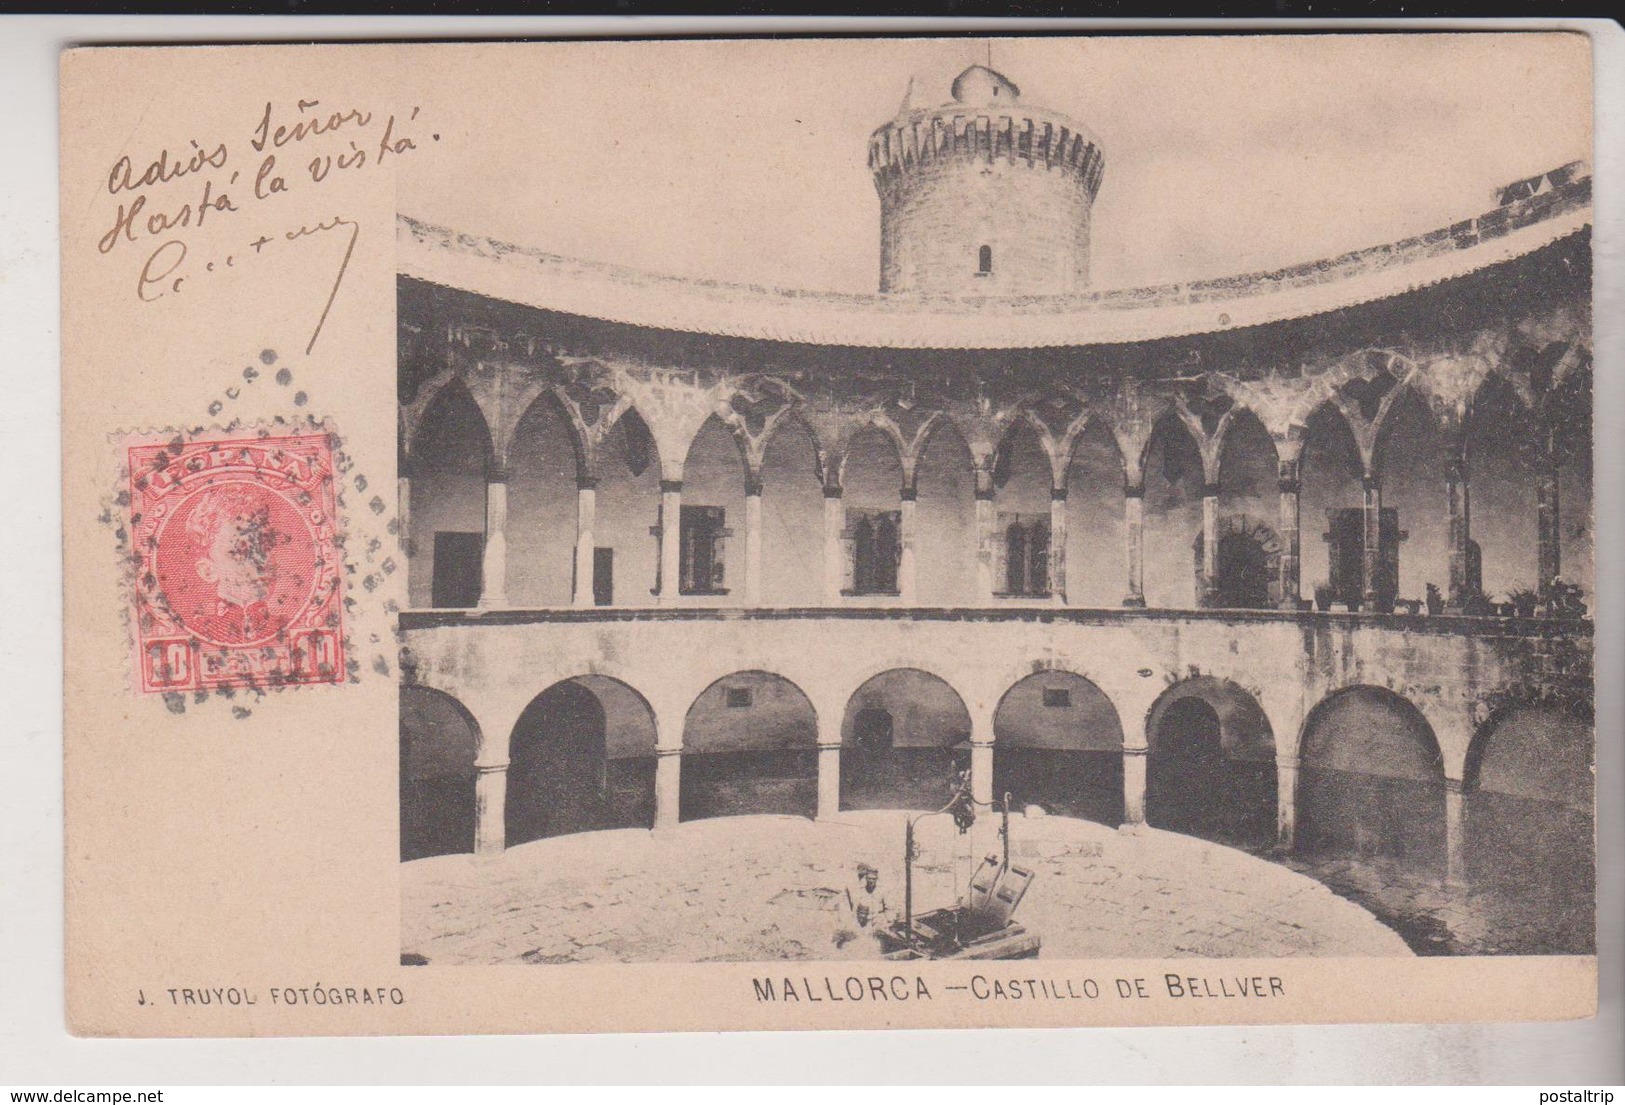 MALLORCA. CASTILLO DE BELLVER - Mallorca